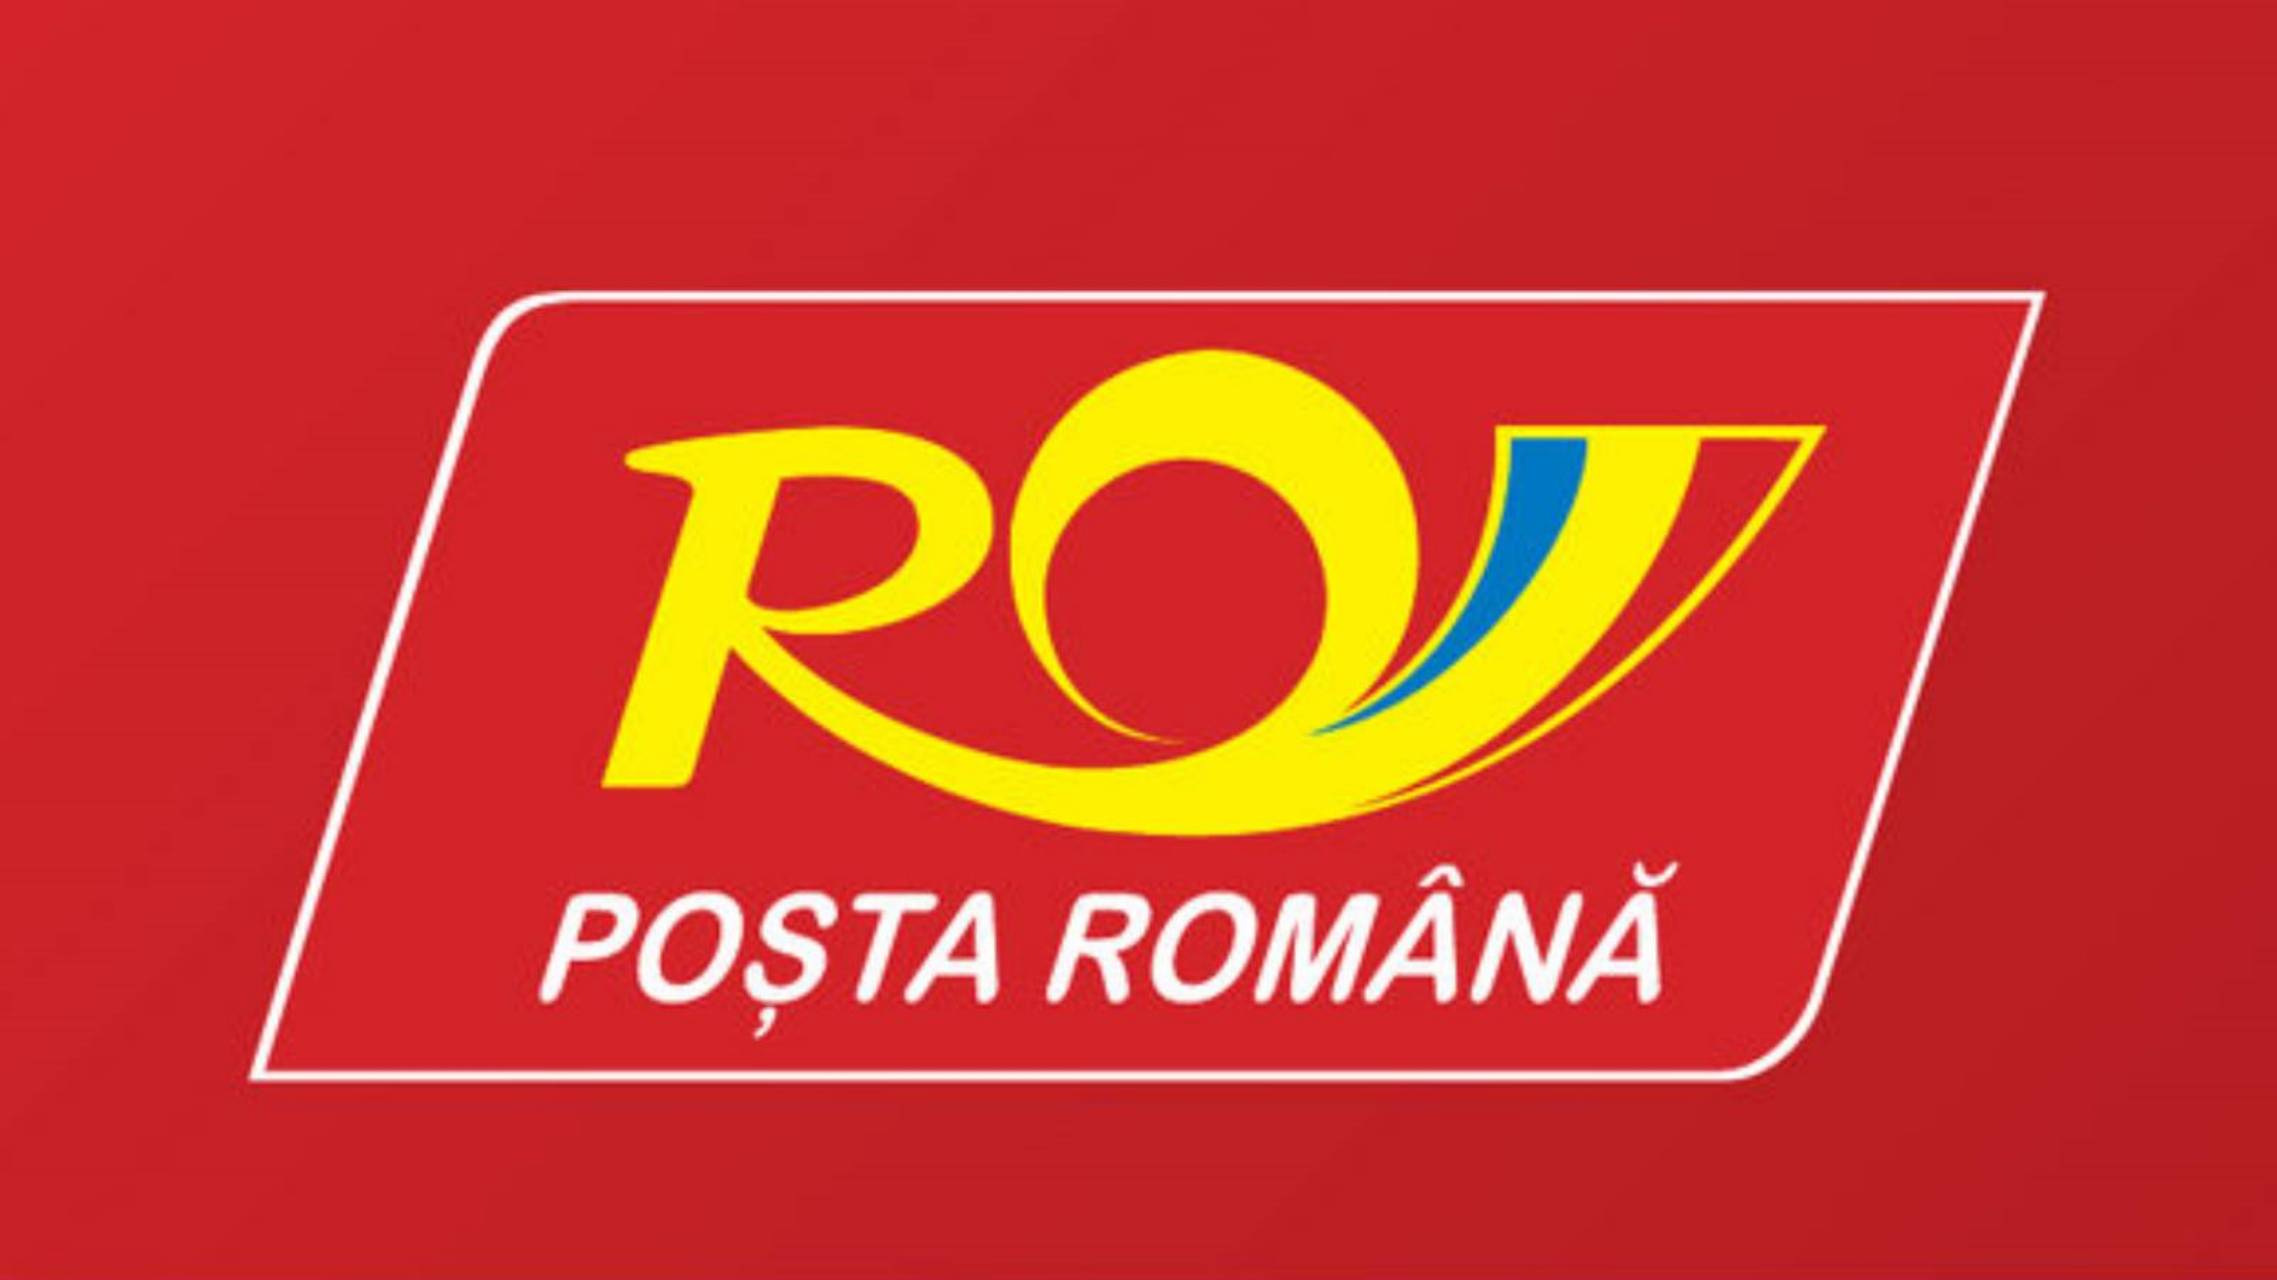 Roemeens post klein pakketje